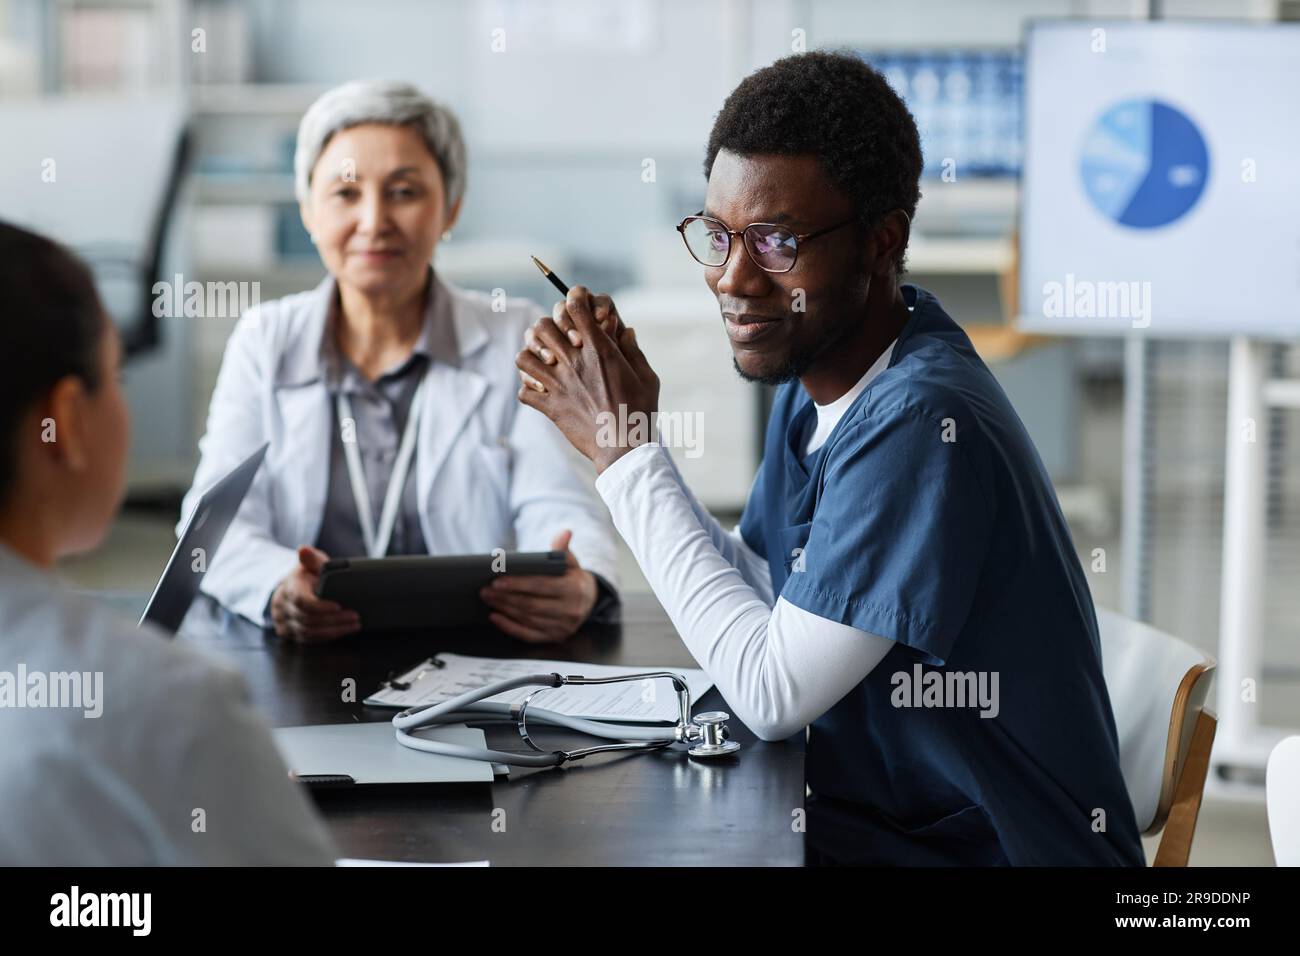 Konzentrieren Sie sich auf junge afroamerikanische Assistentin in Uniform, die eine Kollegin ansieht, während sie während des Gesprächs ihren Standpunkt anhört Stockfoto